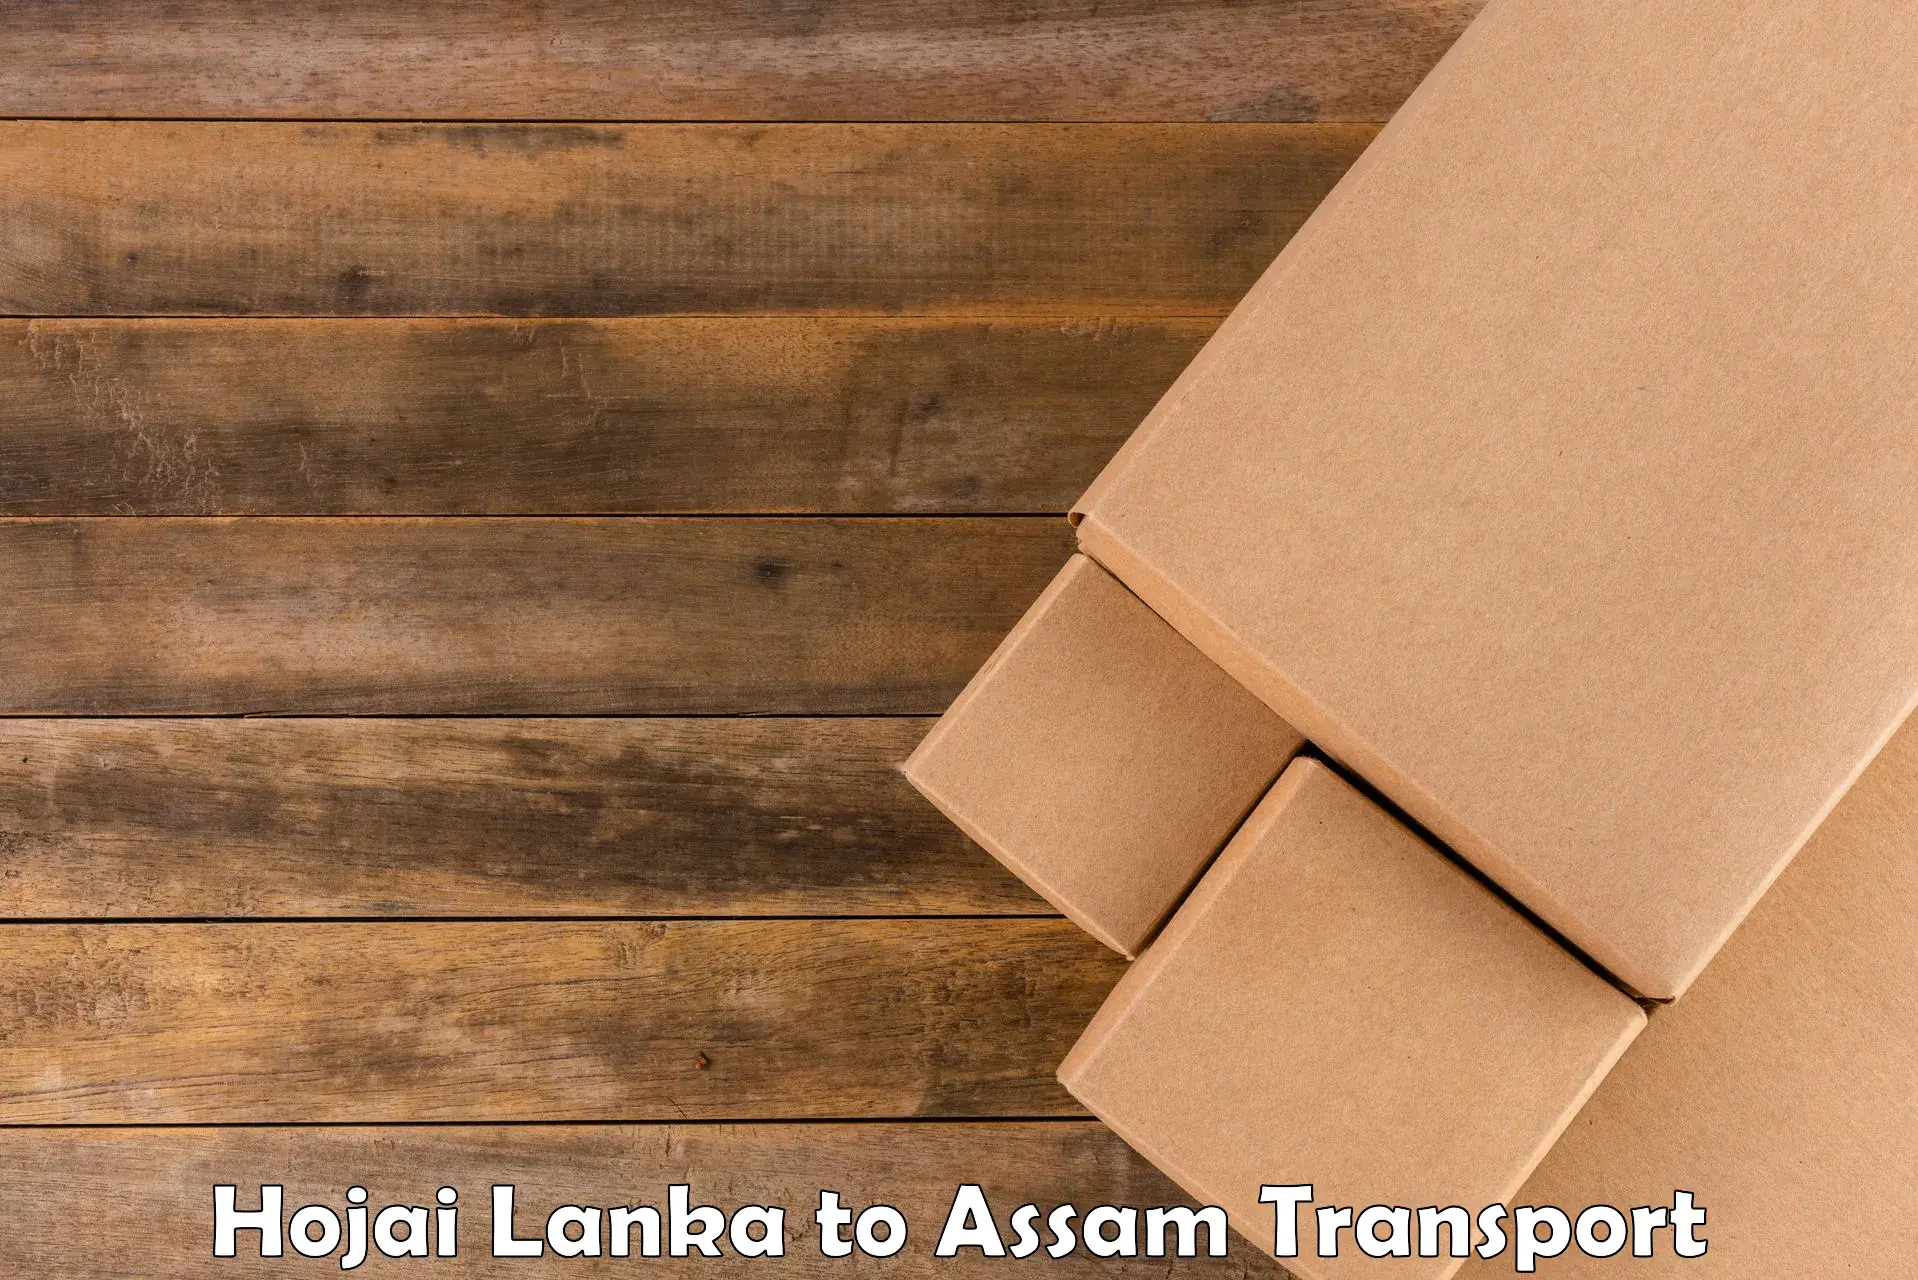 Transport shared services Hojai Lanka to Ramkrishna Nagar Karimganj